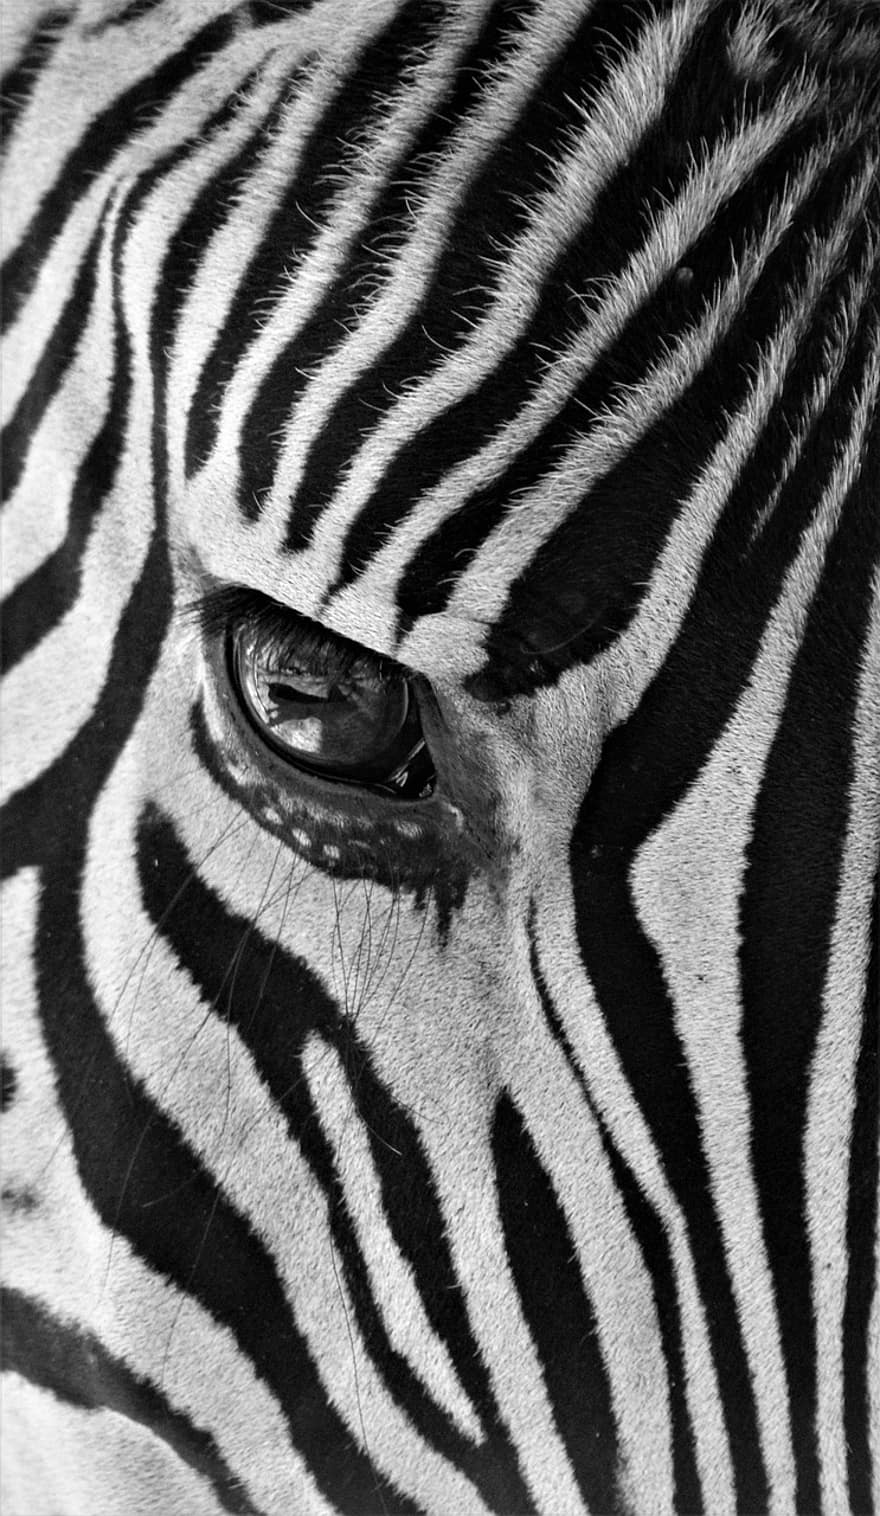 zebra, oko zebry, paski zebry, ssak, Afryka, paski, wzór, safari, Natura, dzikiej przyrody, ścieśniać